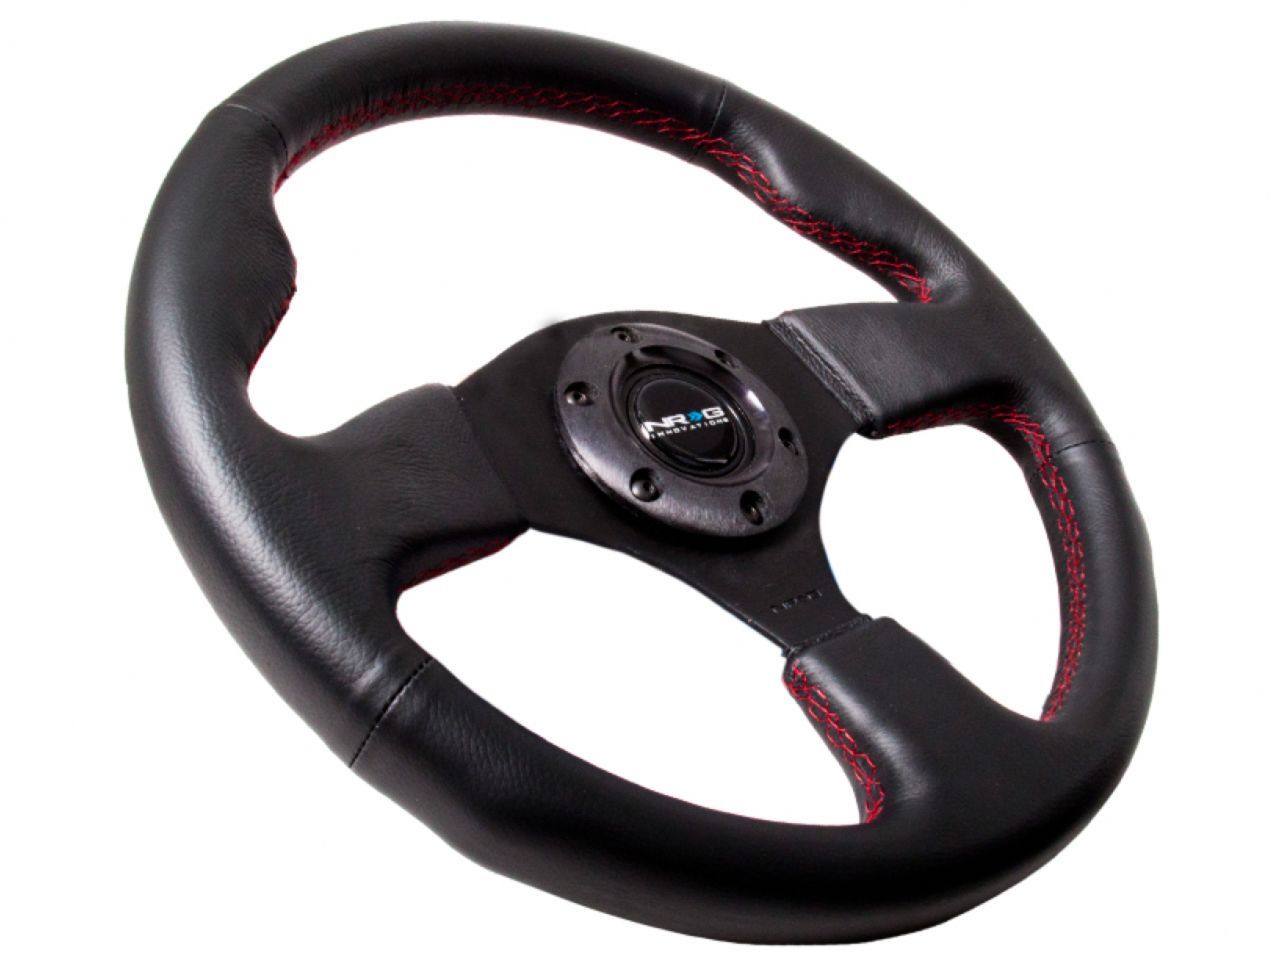 NRG Reinforced Steering Wheel- 320mm Sport Leather Steering Wheel